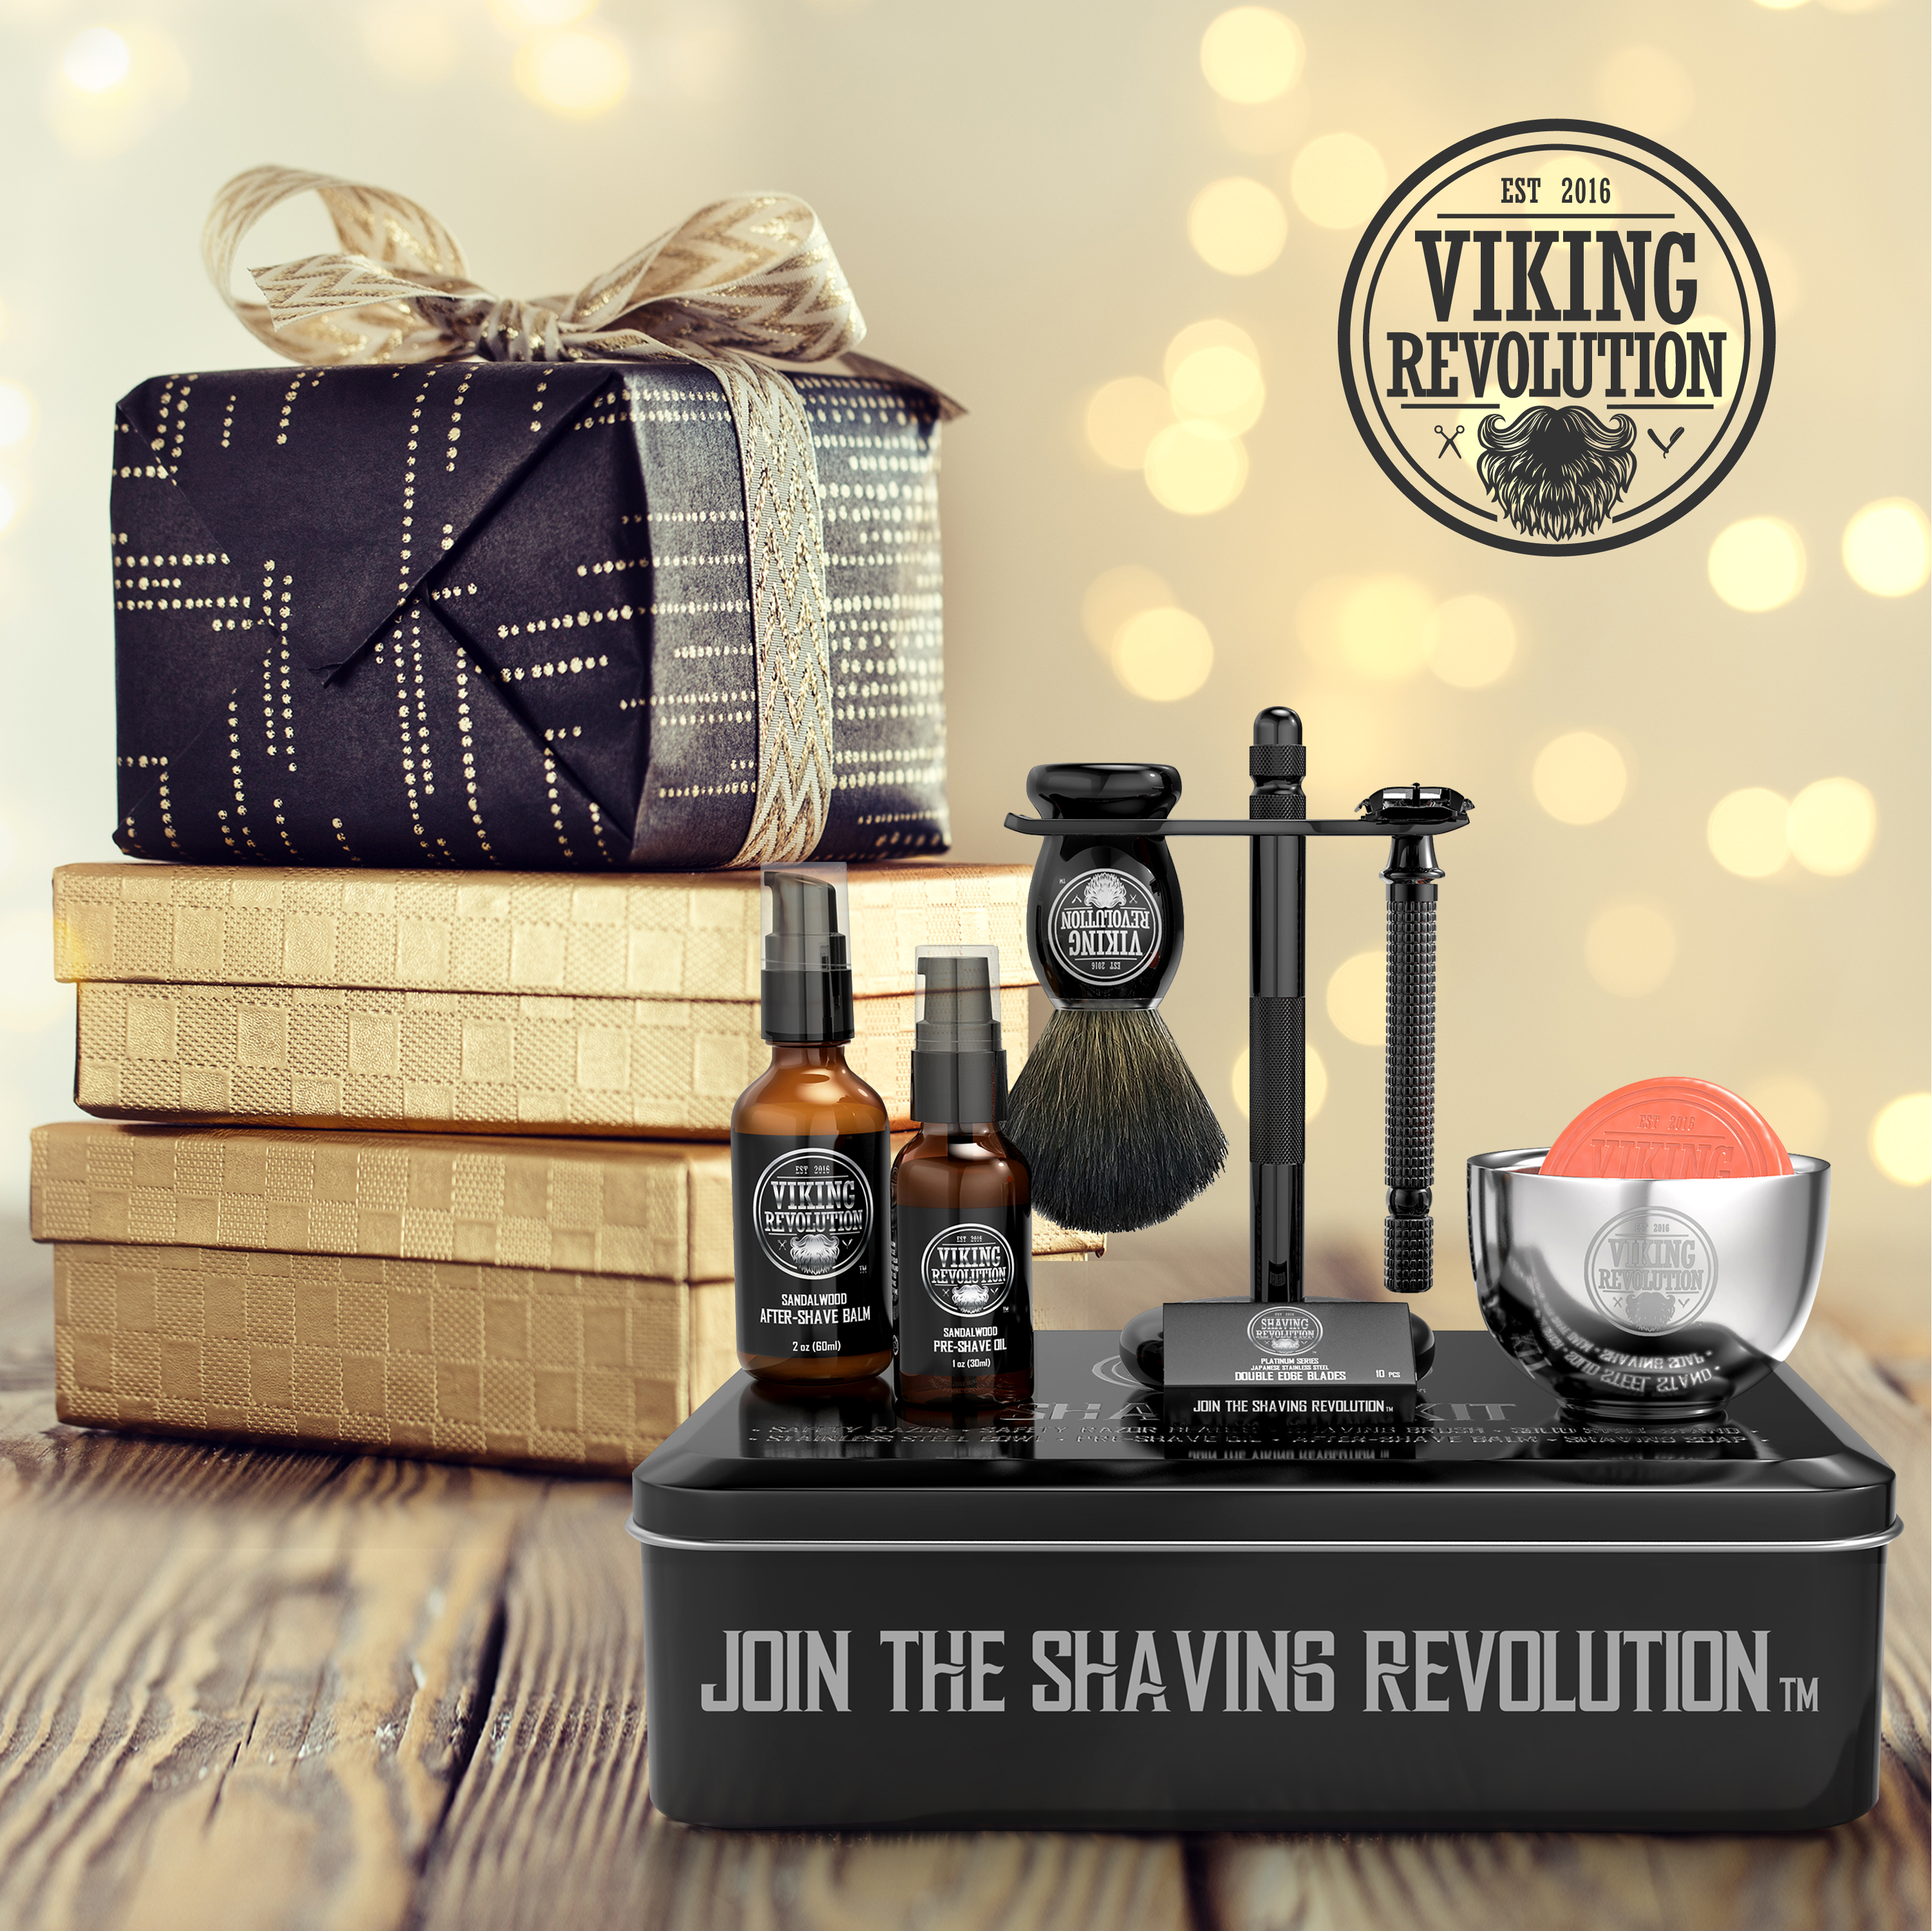 Viking Revolution - Shaving Kit For Men - Shaving Kit with Double Edge Razor, Stand, Bowl & More - Luxury Christmas Gifts For Men - image 2 of 10